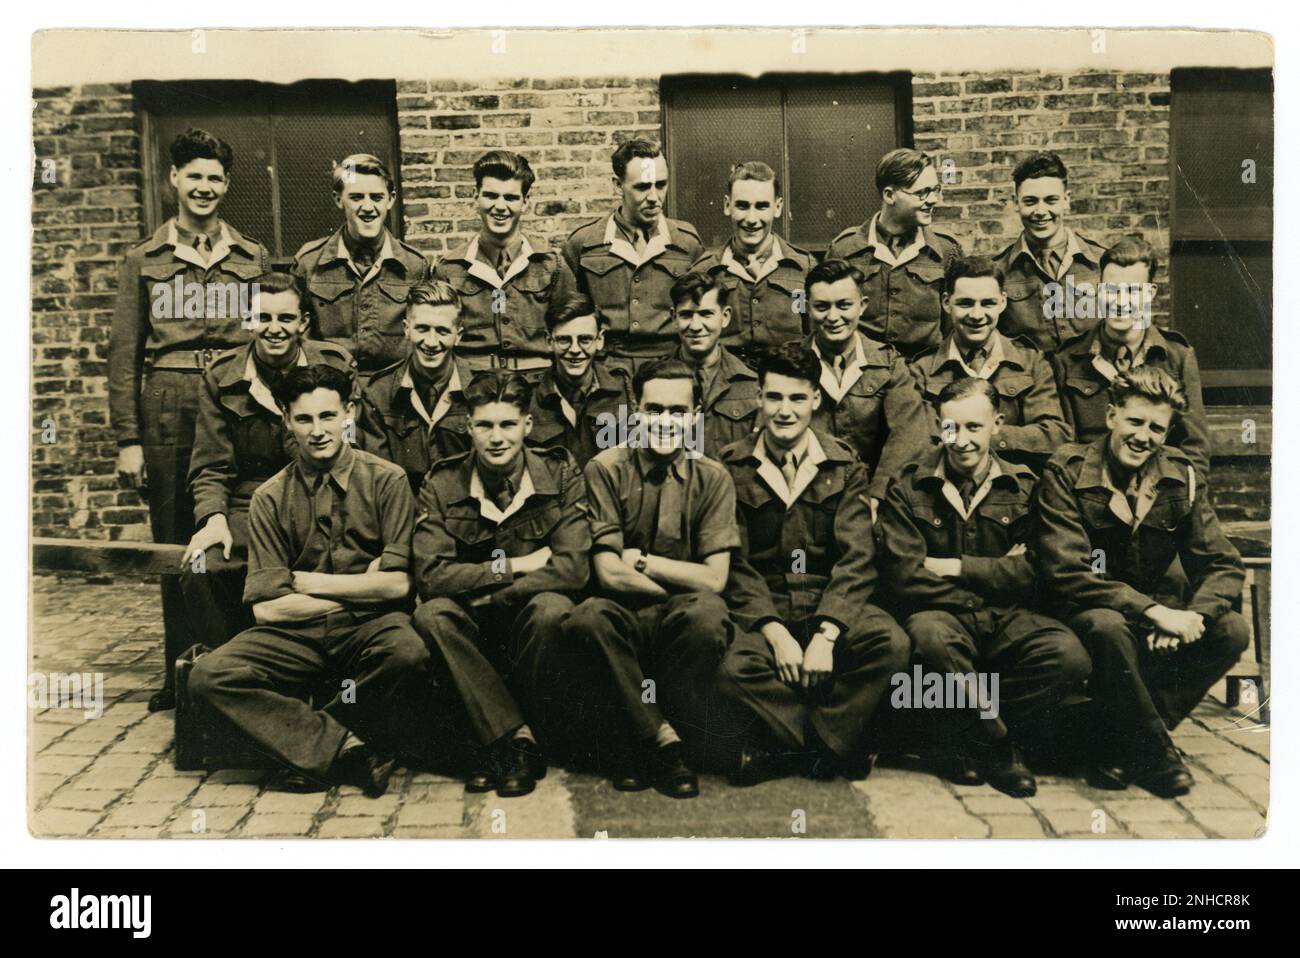 Originalfoto der Gruppe aus dem Jahr WW2 von jungen Männern, möglicherweise RAF-Trainingskorps, Air Cadet Defence Corps / Jugendtraining in blauen Uniformen. Mit weißen Revers. Viele Charaktere, die glücklich aussehen. Etwa 1940er Jahre in Großbritannien Stockfoto